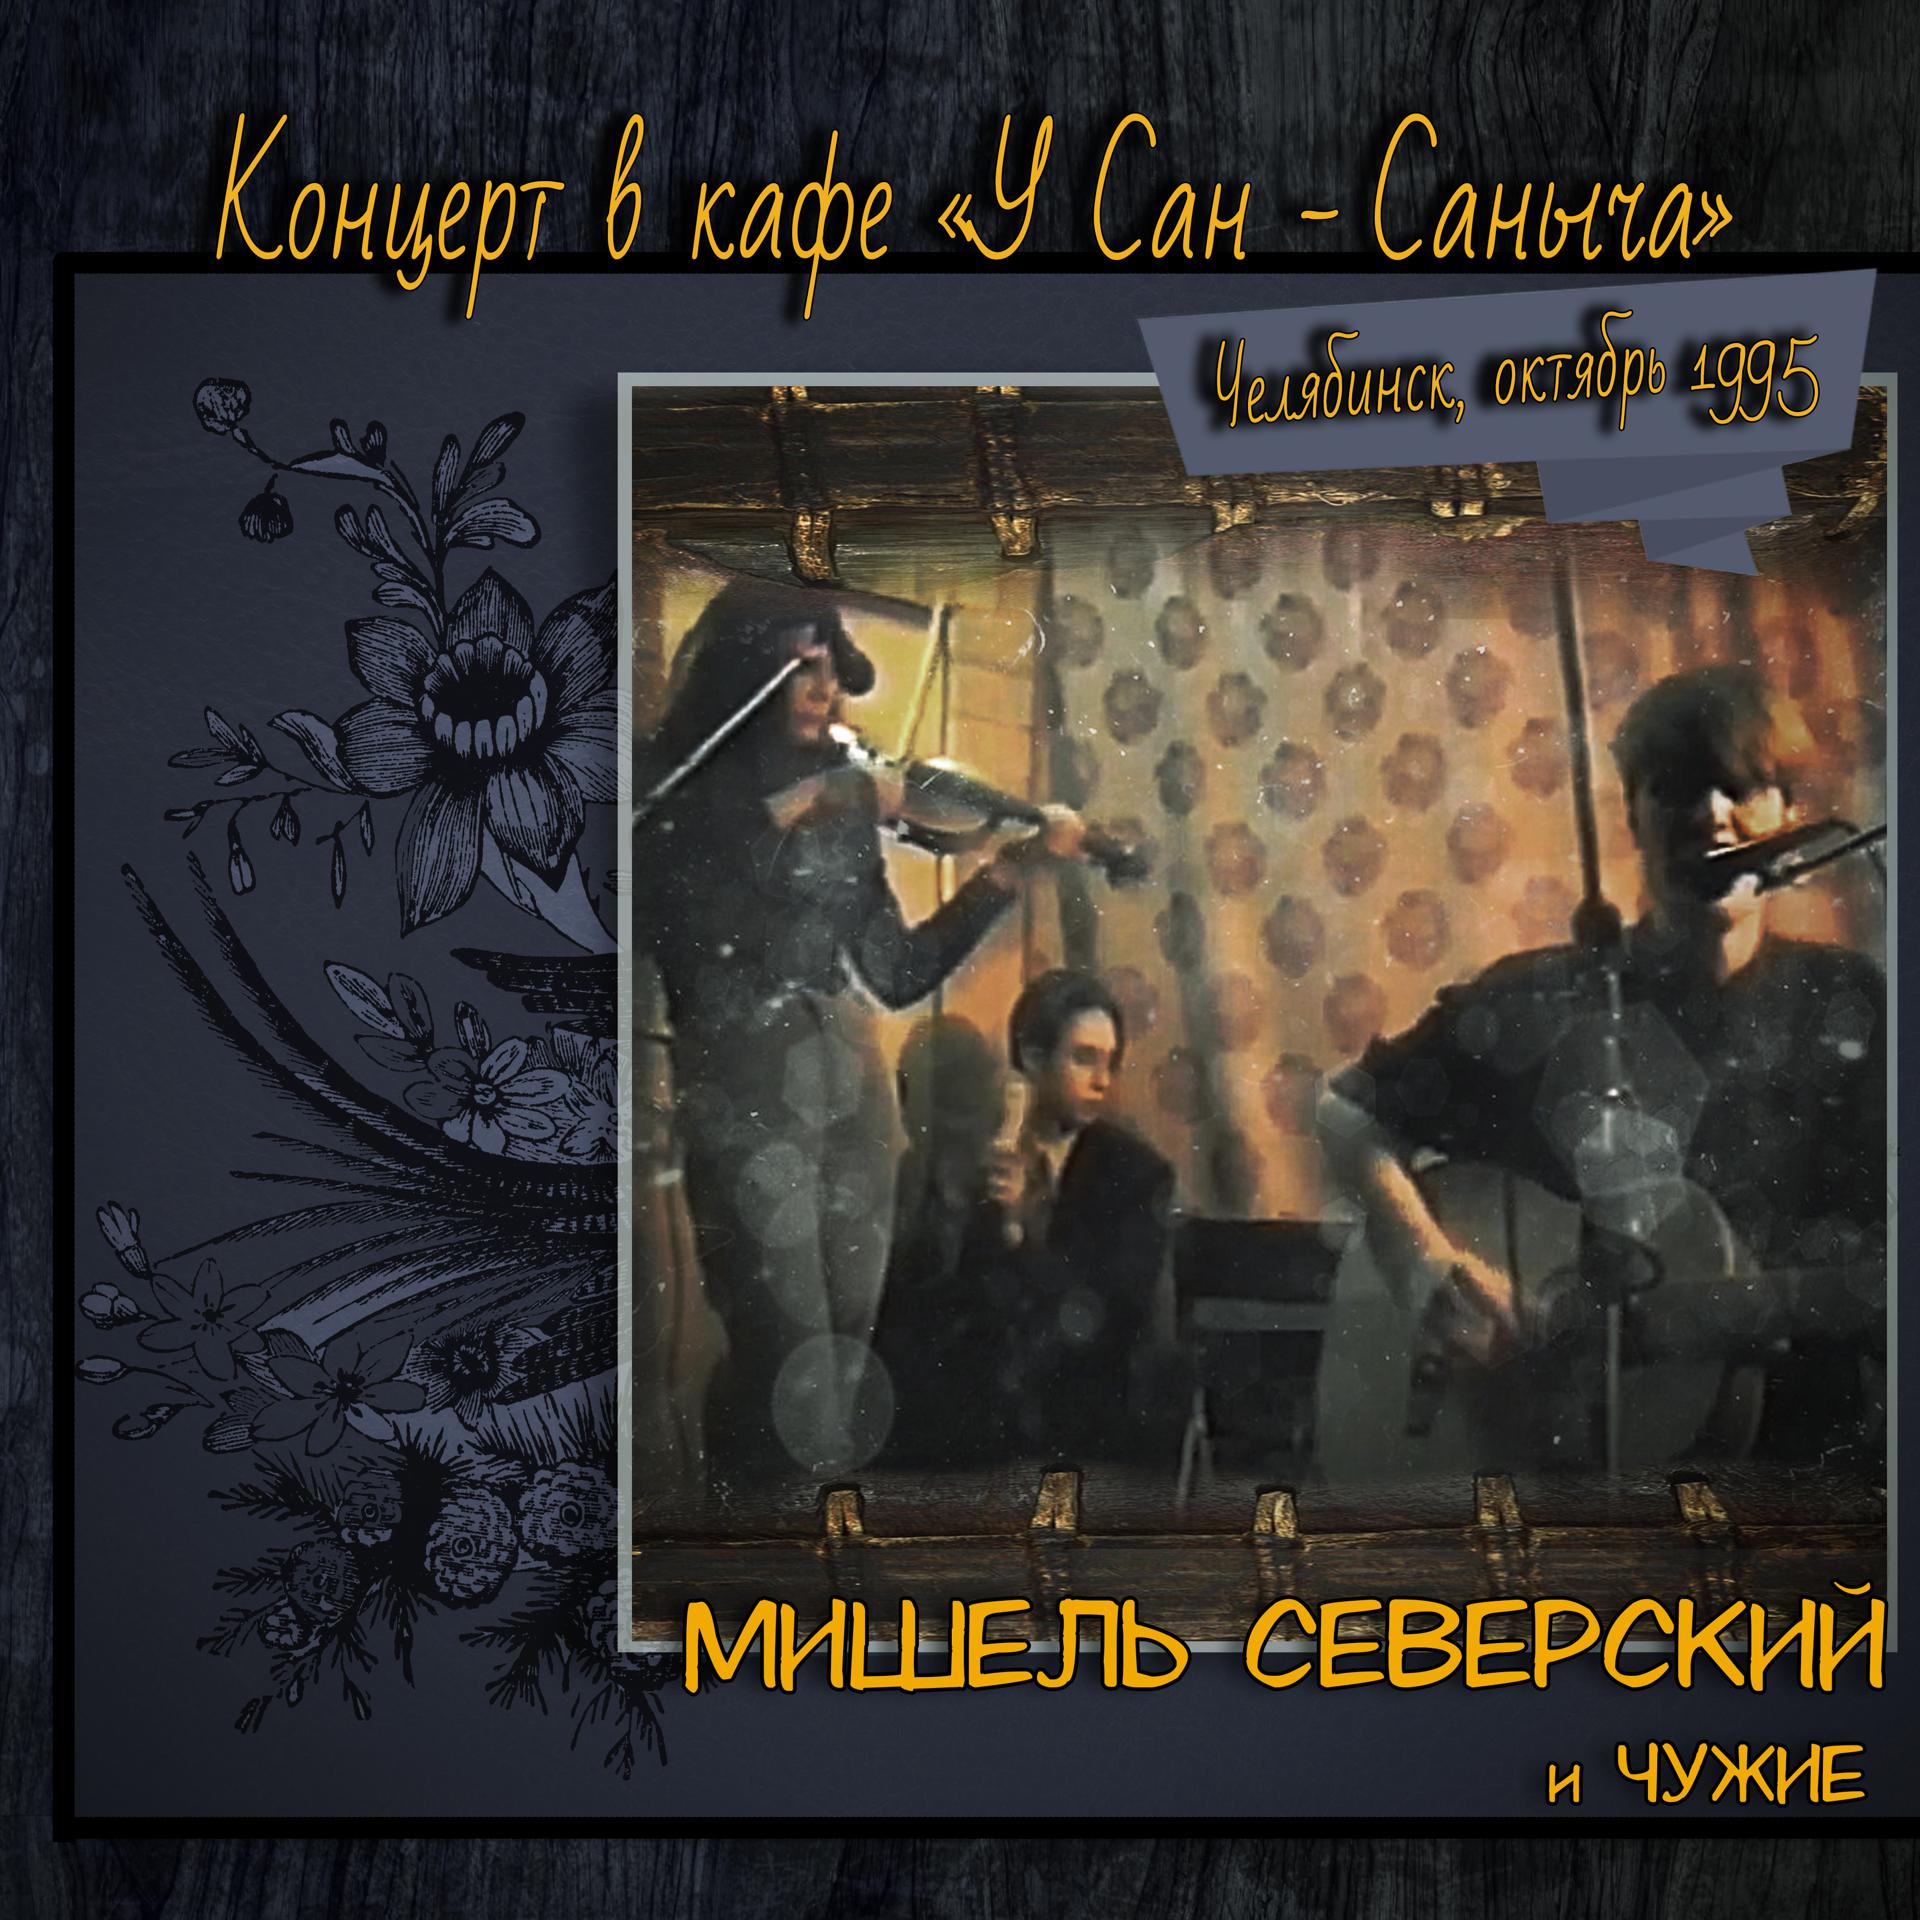 Постер альбома Концерт в кафе «У Сан - Саныча», Челябинск, октябрь 1995